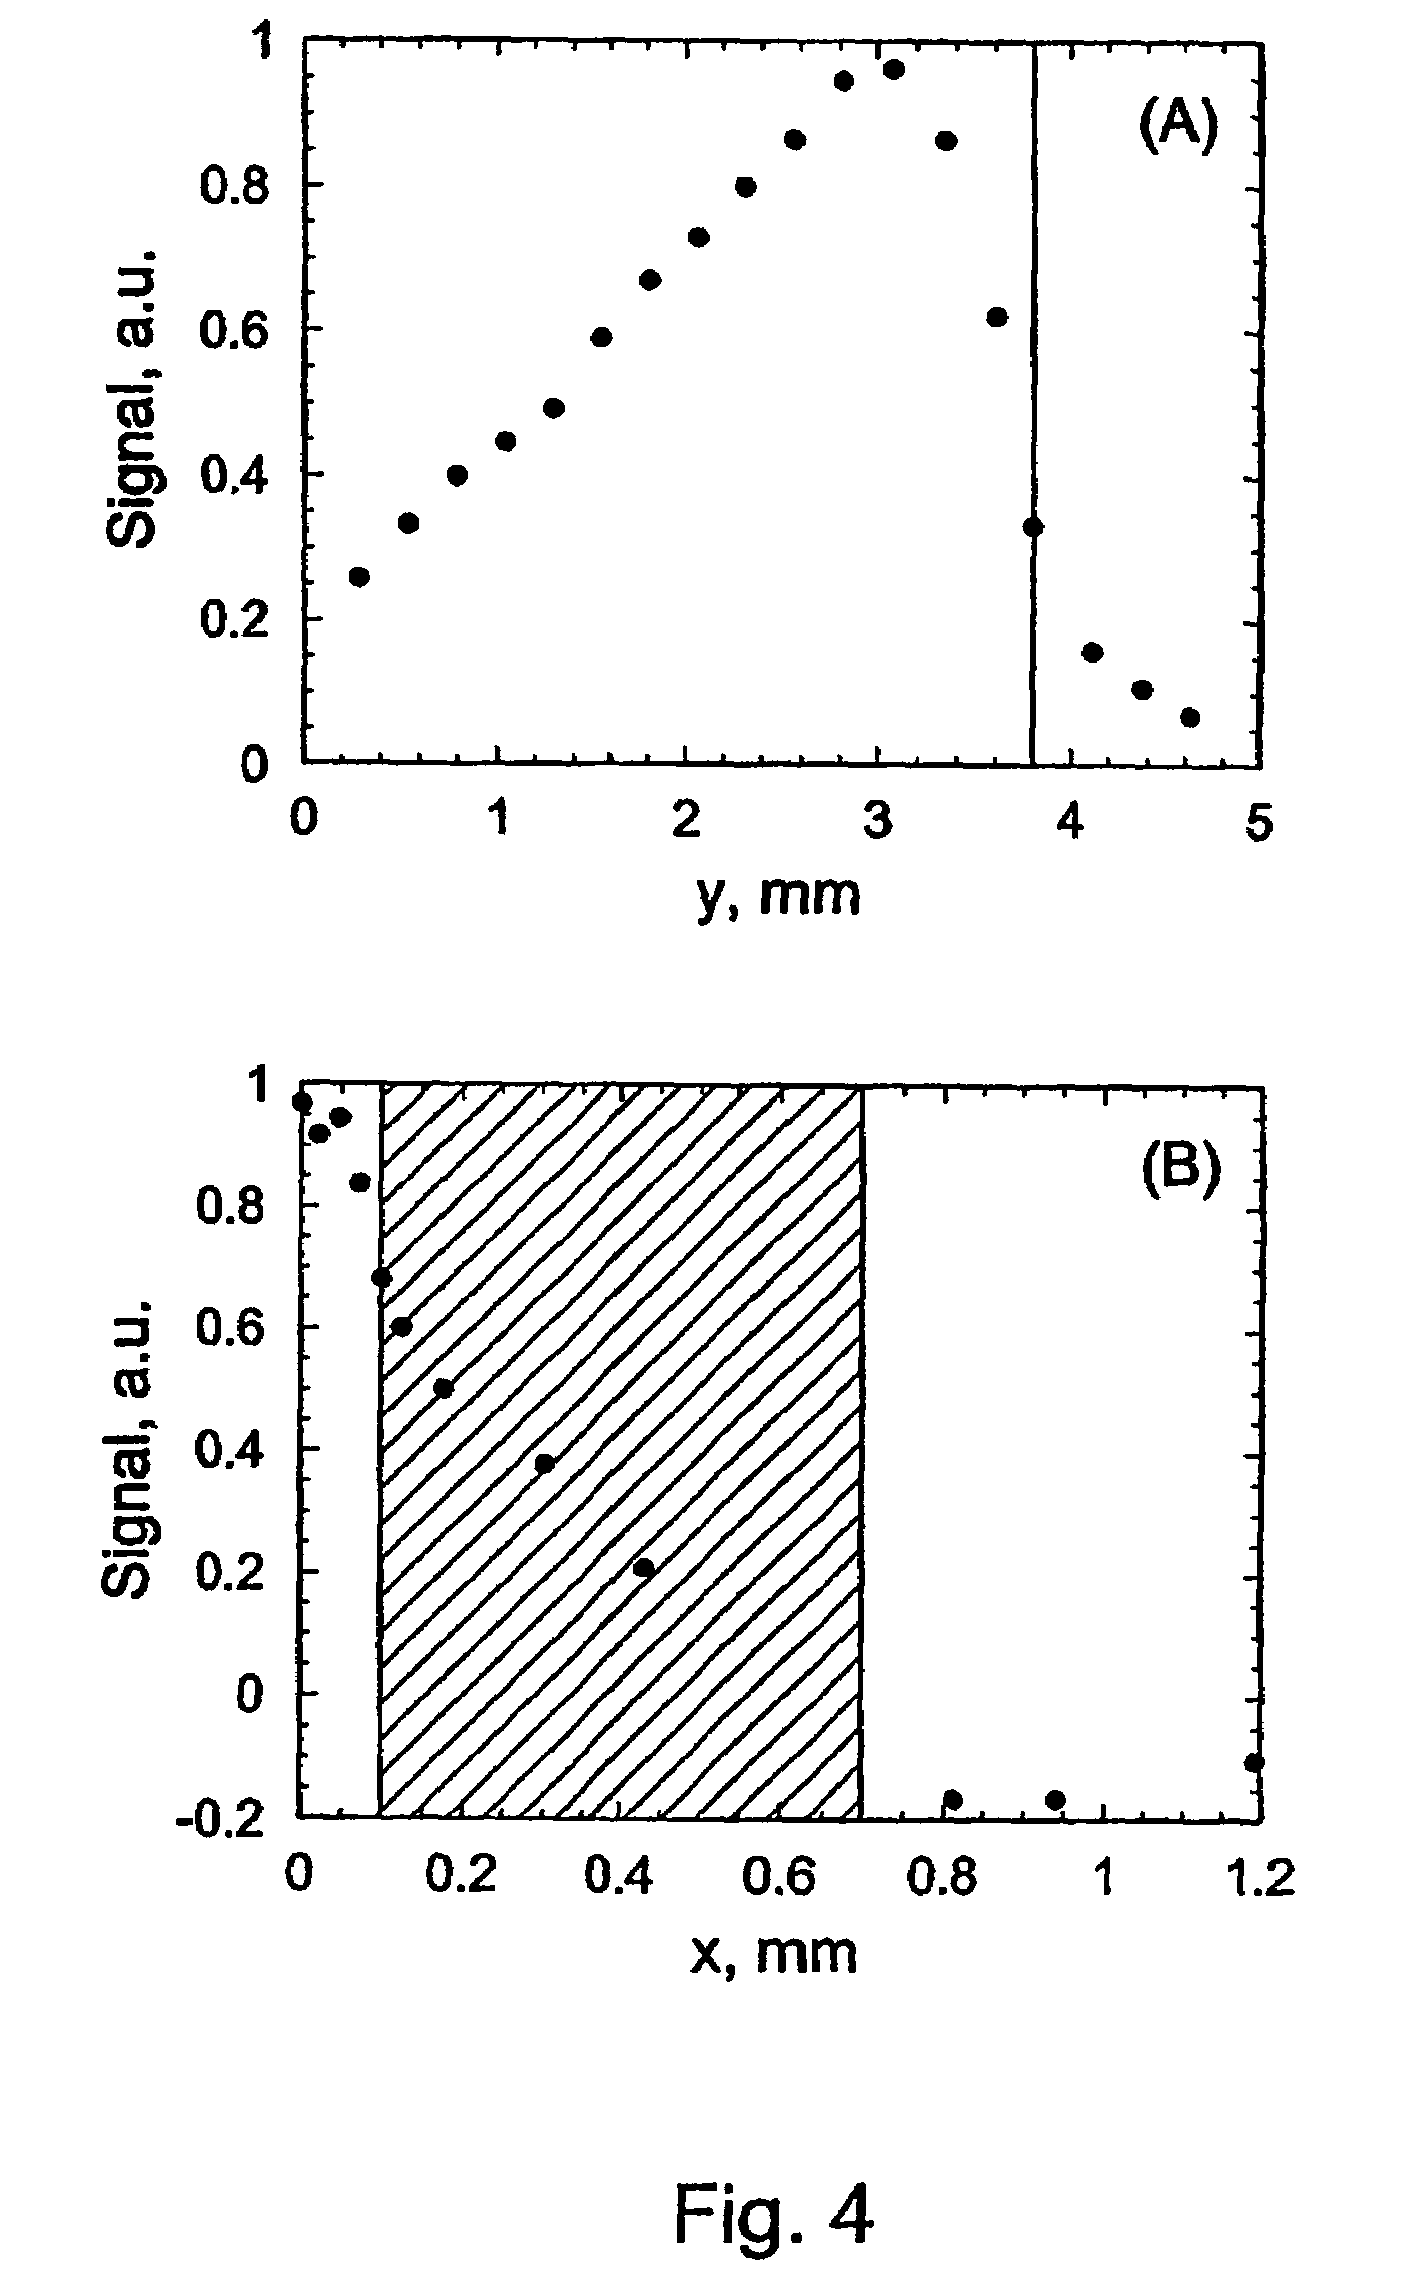 Quartz-enhanced photoacoustic spectroscopy